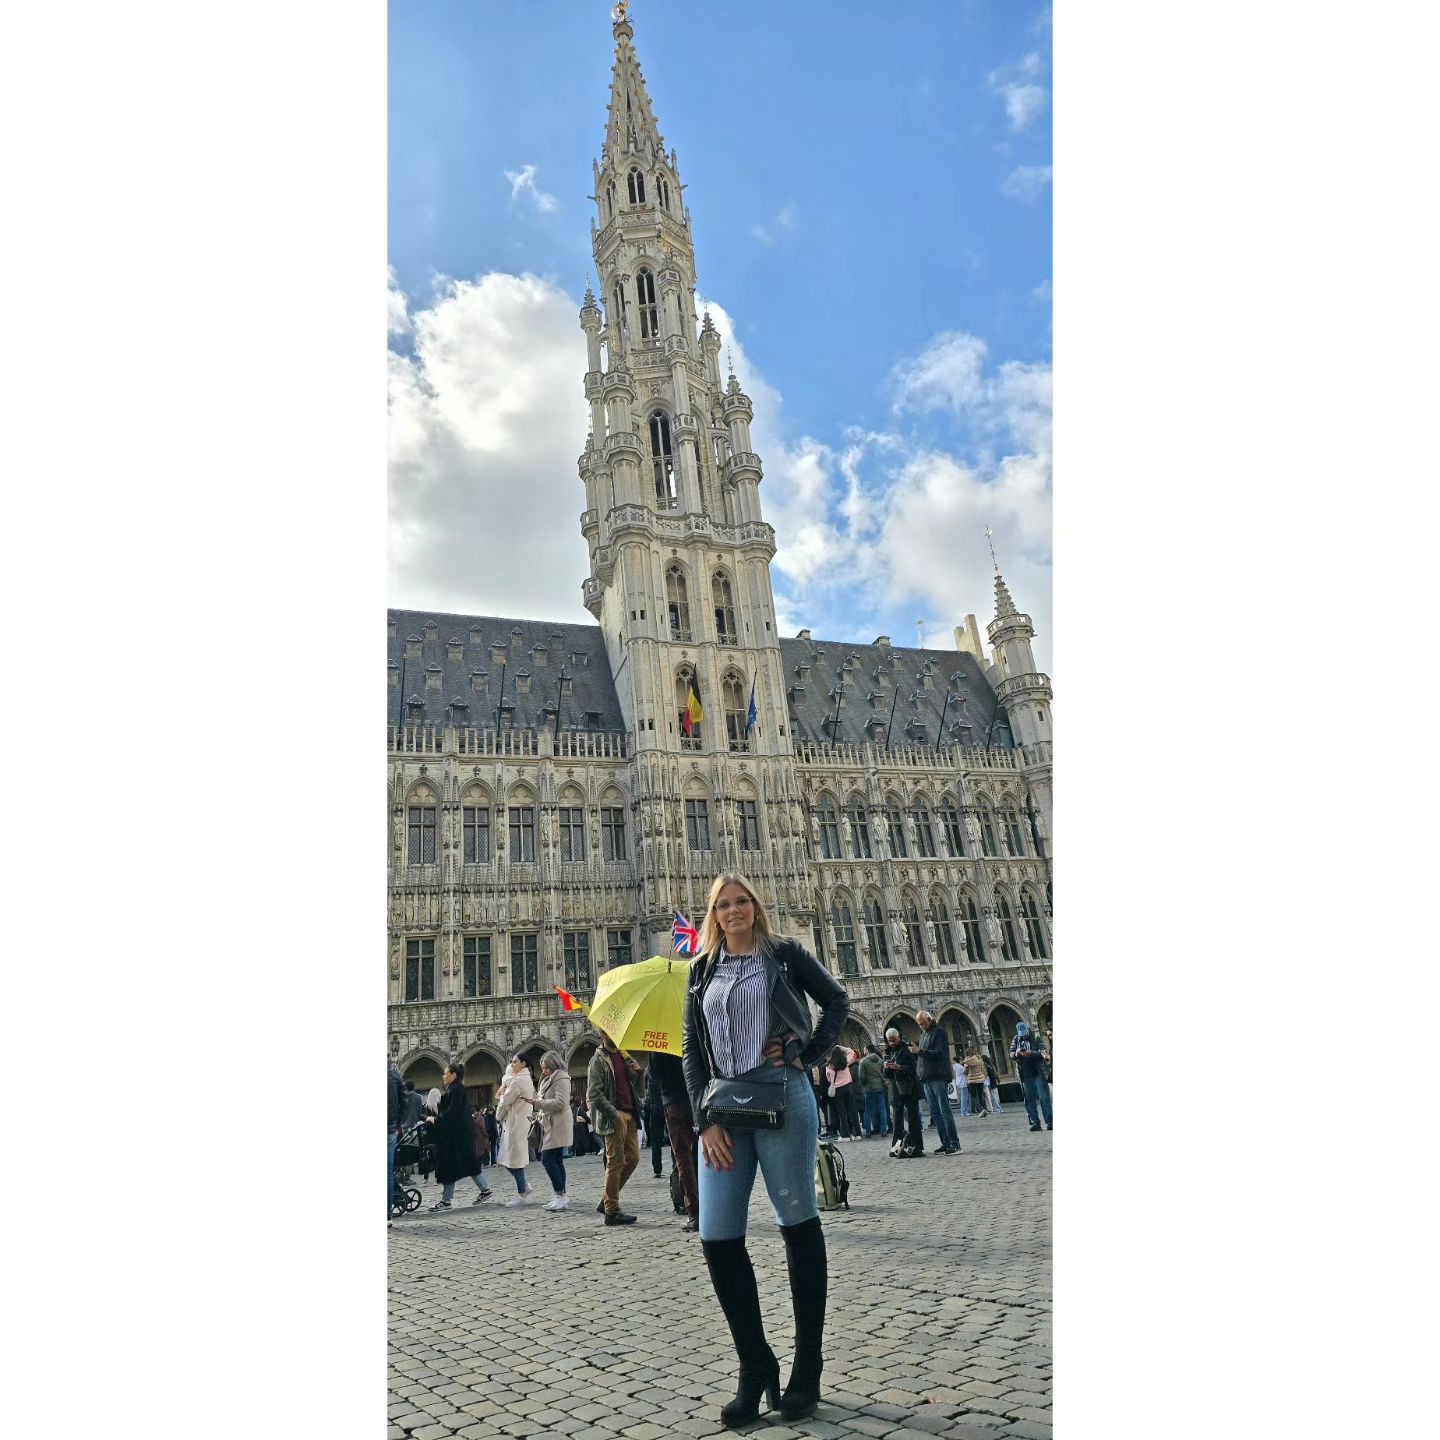 Juste comme ça, pour le bonheur. Vous avez déjà visité #Bruxelles ? Si oui un souvenir à nous partager ? 😜 Bruxelles ma belle 🇧🇪! 
#Voyage #Tourisme #Europe #belgique🇧🇪 #bruxelles #charleroi #modelephoto #grandplace #grandplacebrussels #monde #botte #shoes #bien #bonheur #soelil #beautemps #balade #🇧🇪